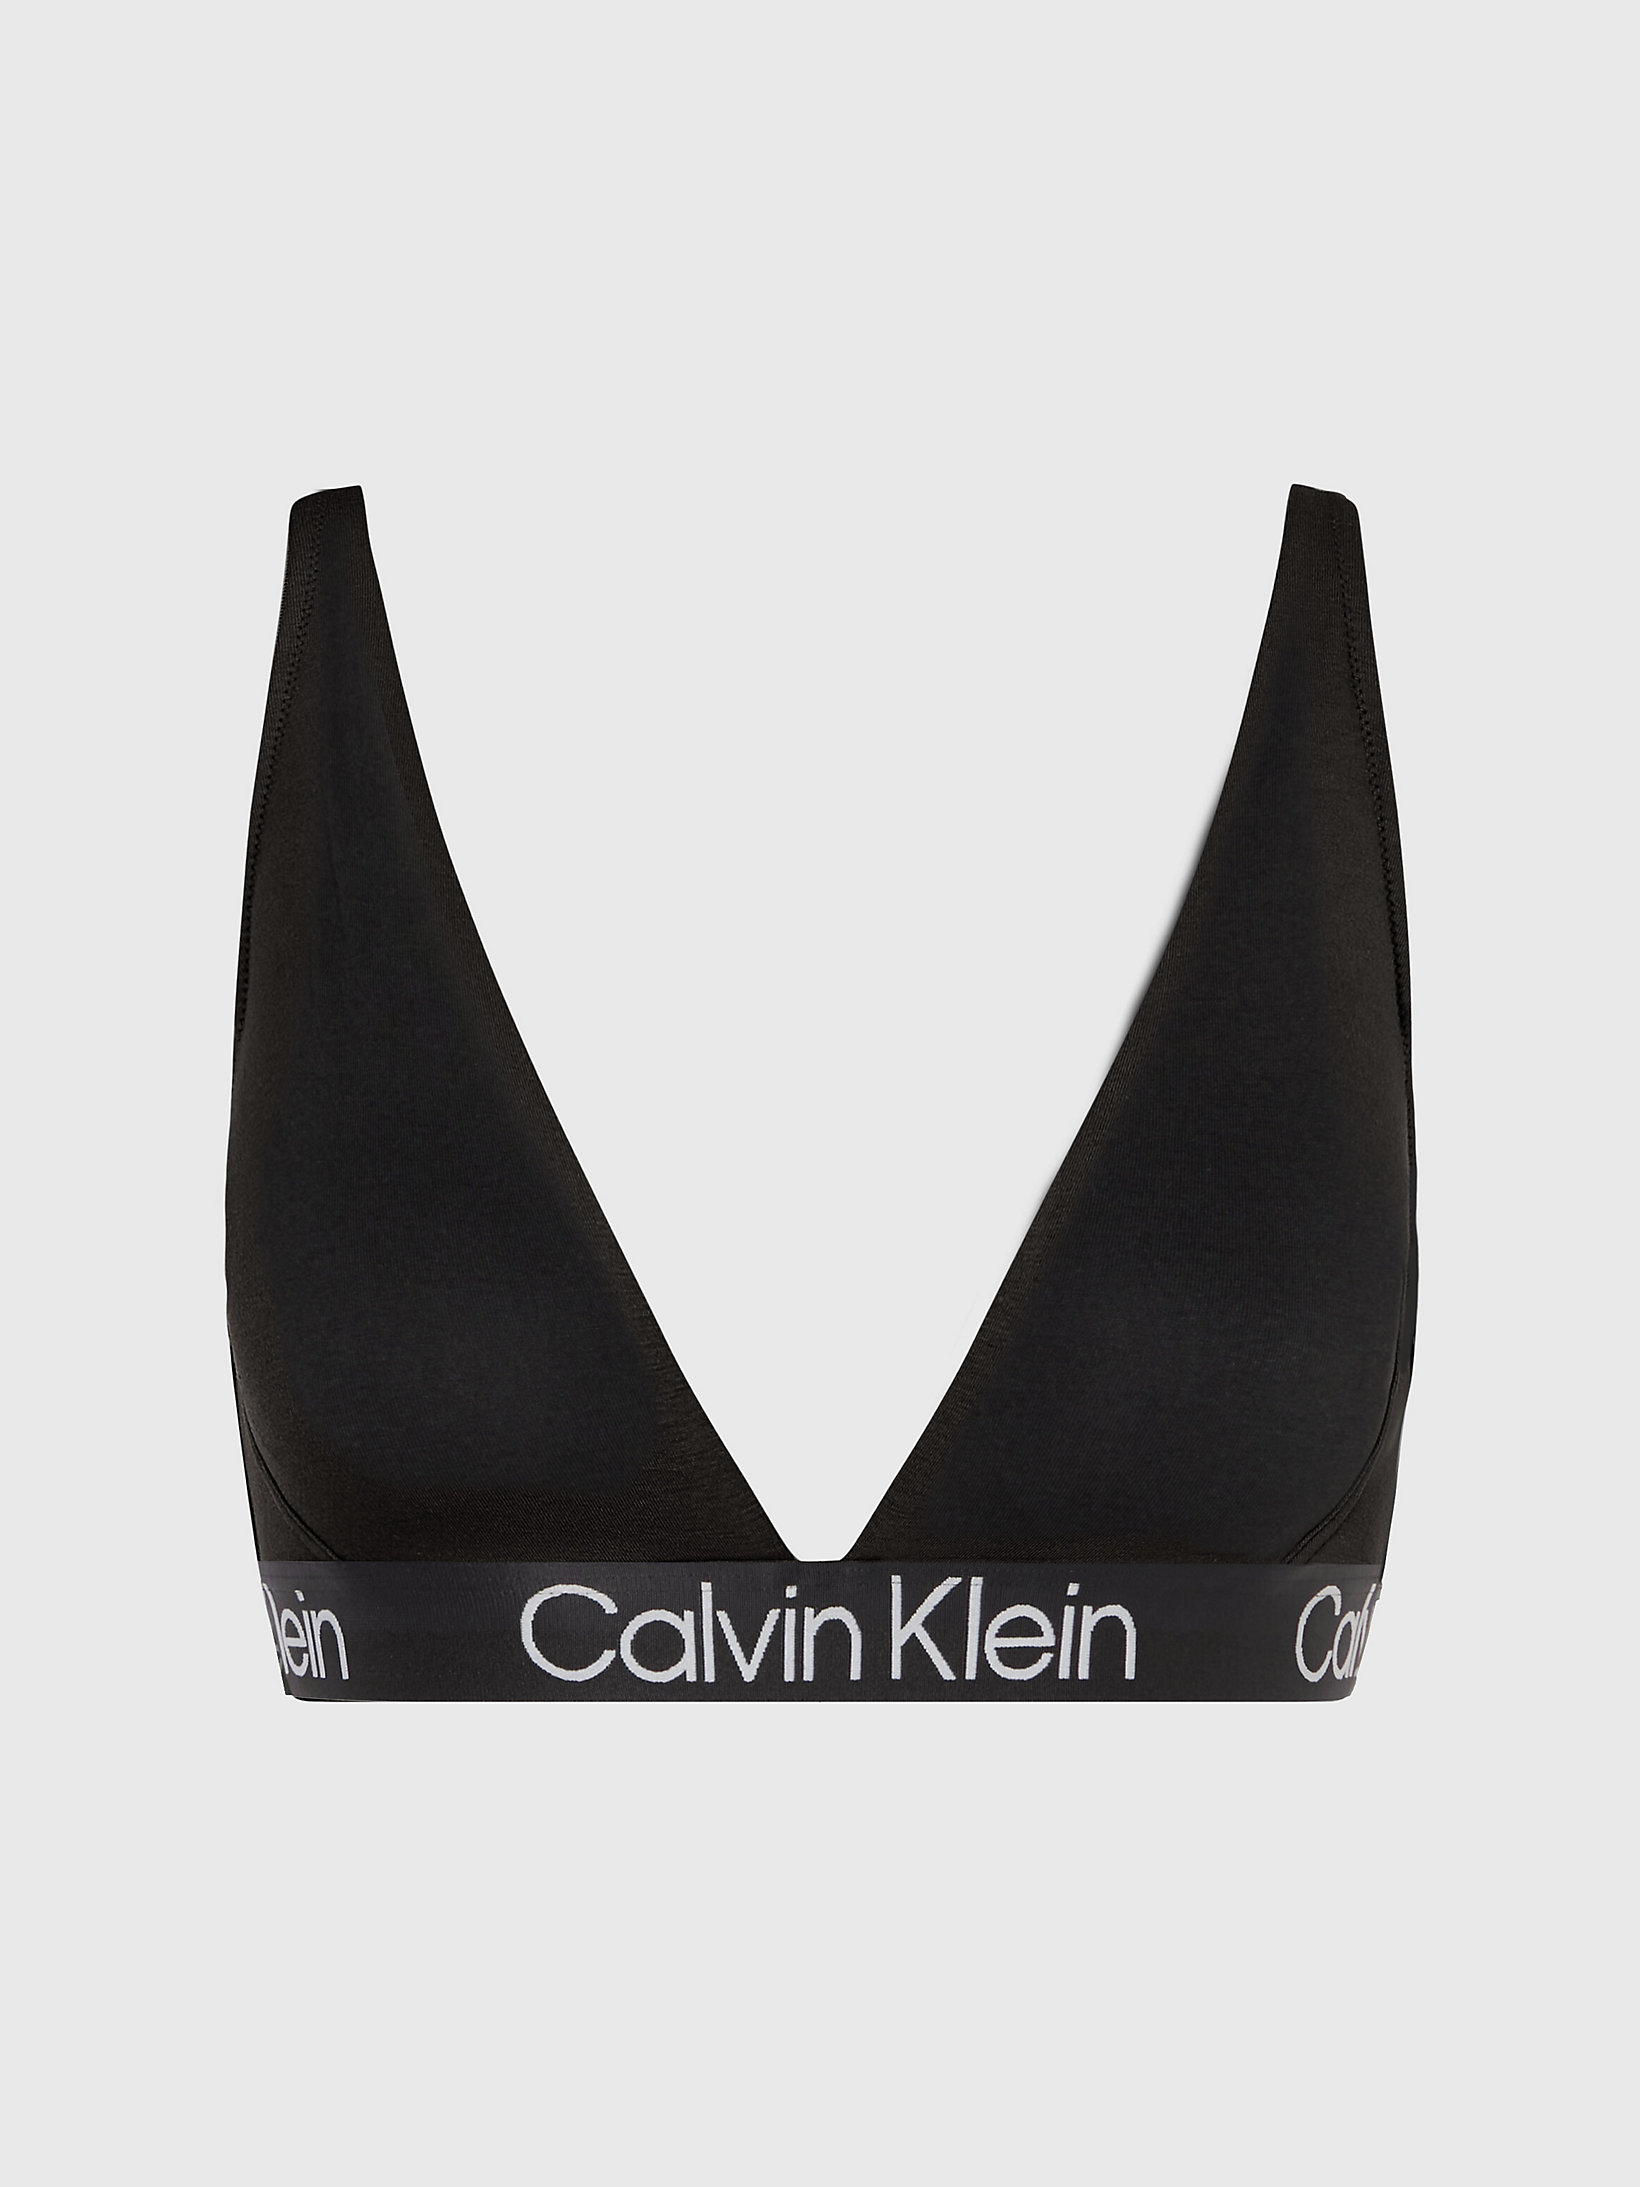 Black > Bralette - Modern Structure > undefined Damen - Calvin Klein